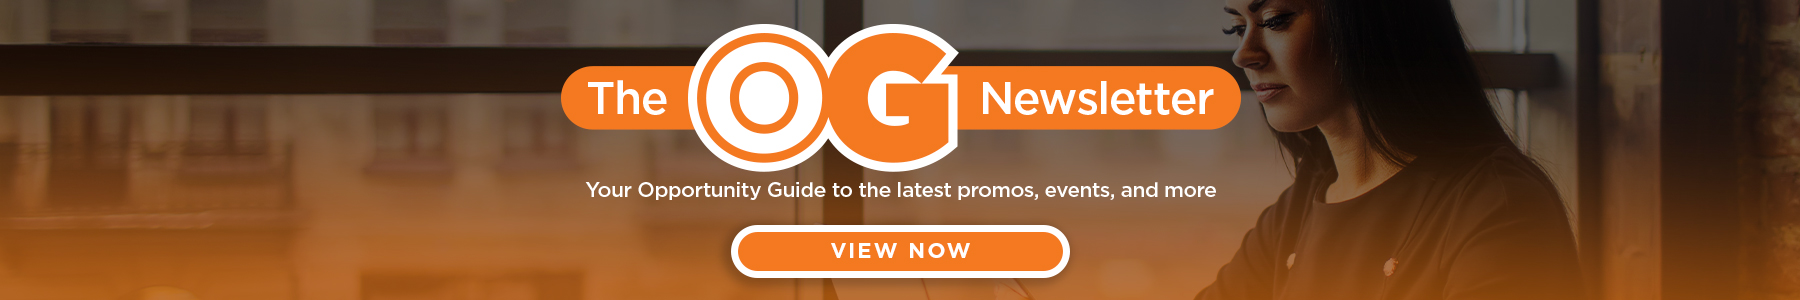 OG-Newsletter-banner-1800x300